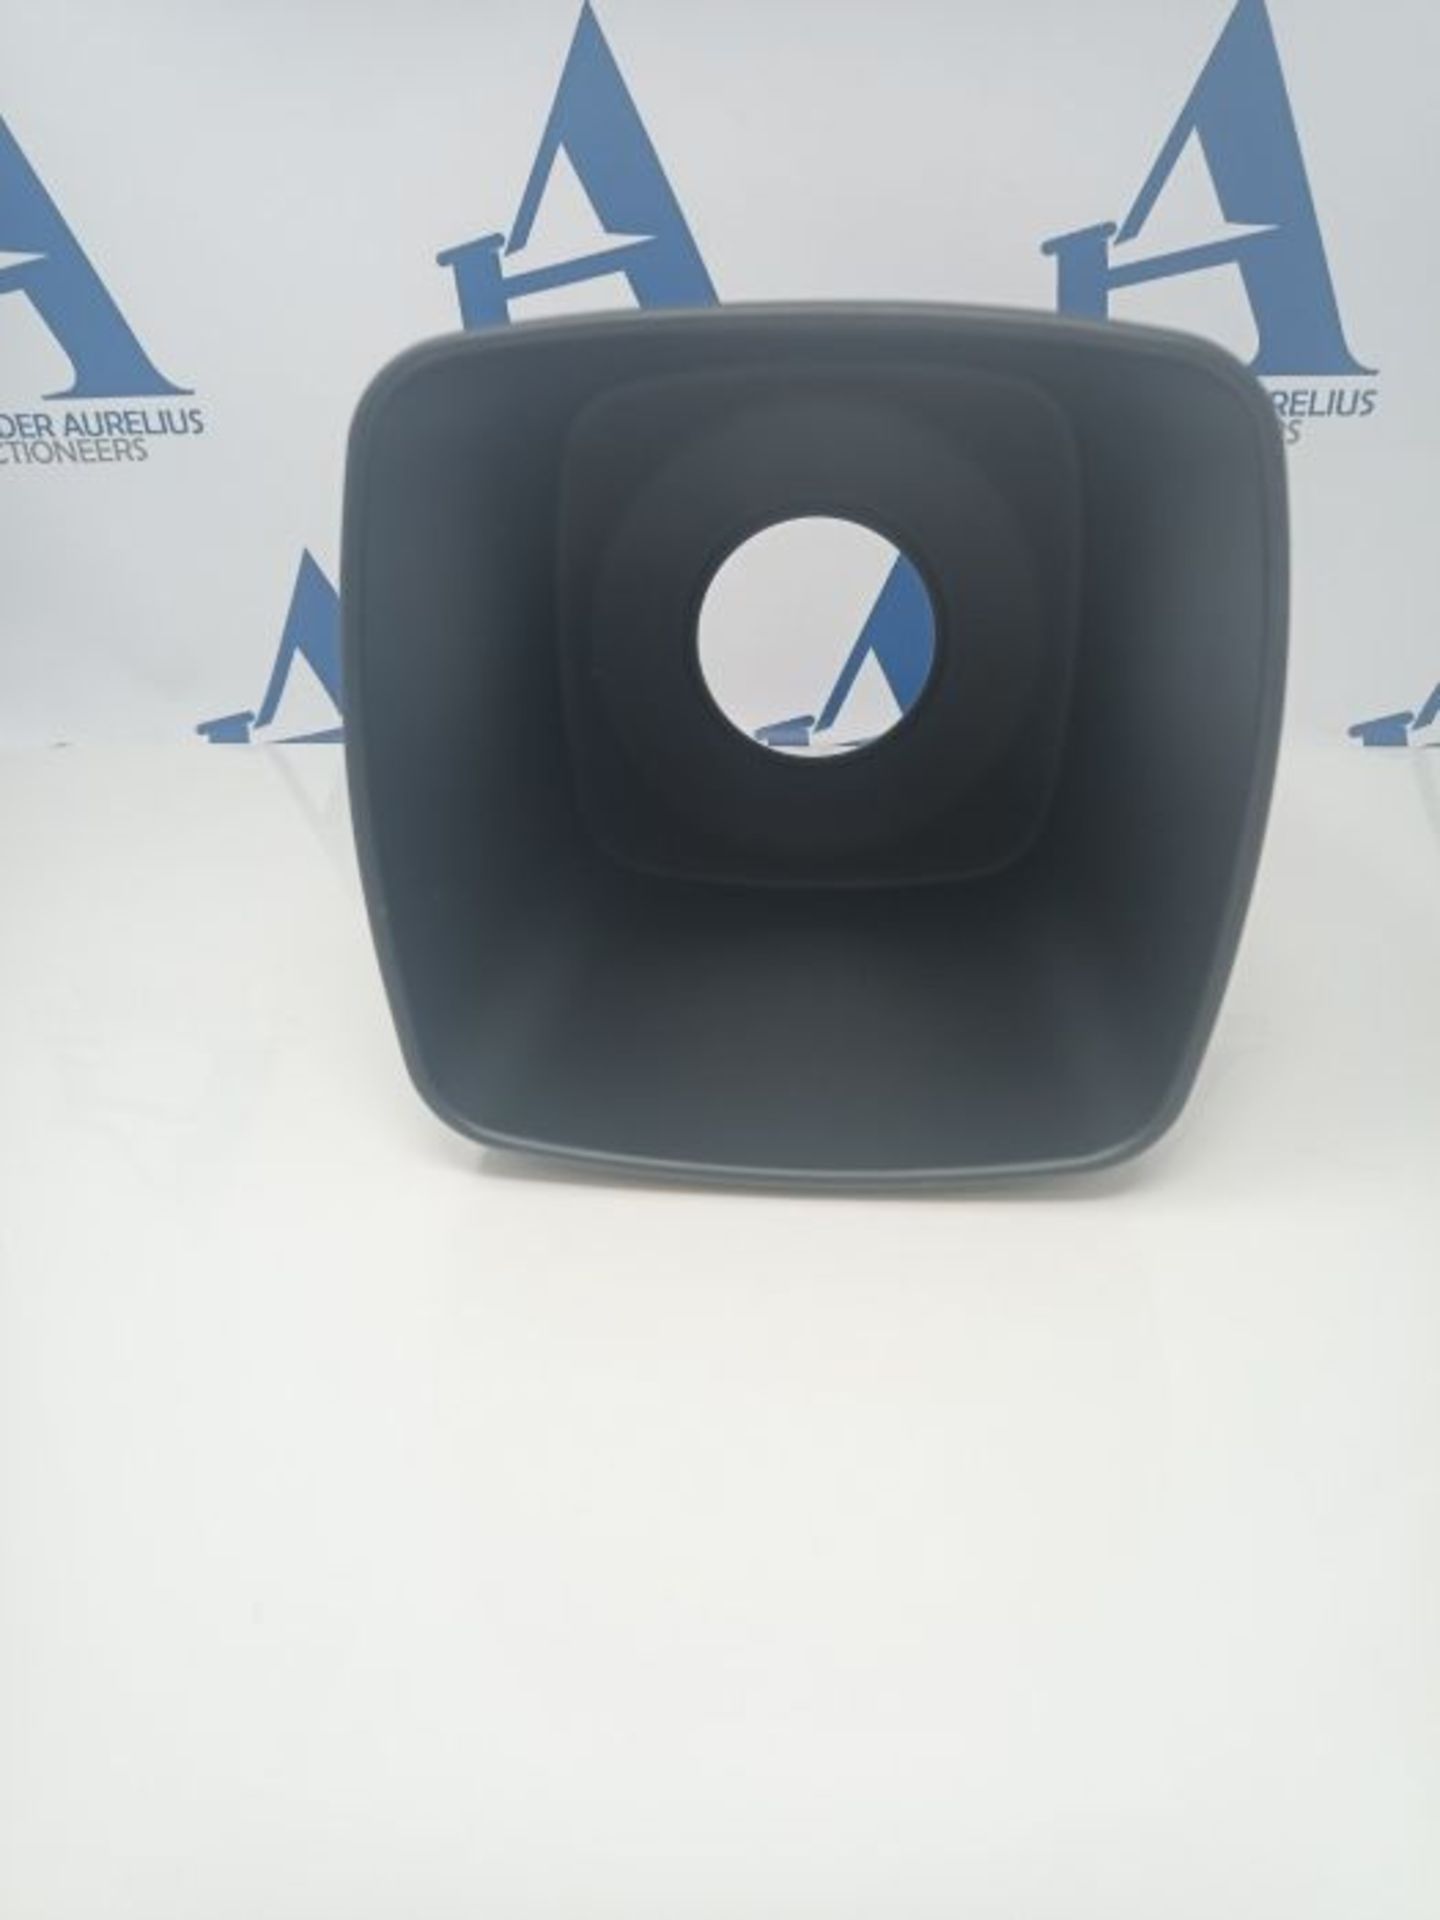 iDesign Austin Scatola porta fazzoletti, Dispenser salviette cubico in metallo, nero o - Image 3 of 3